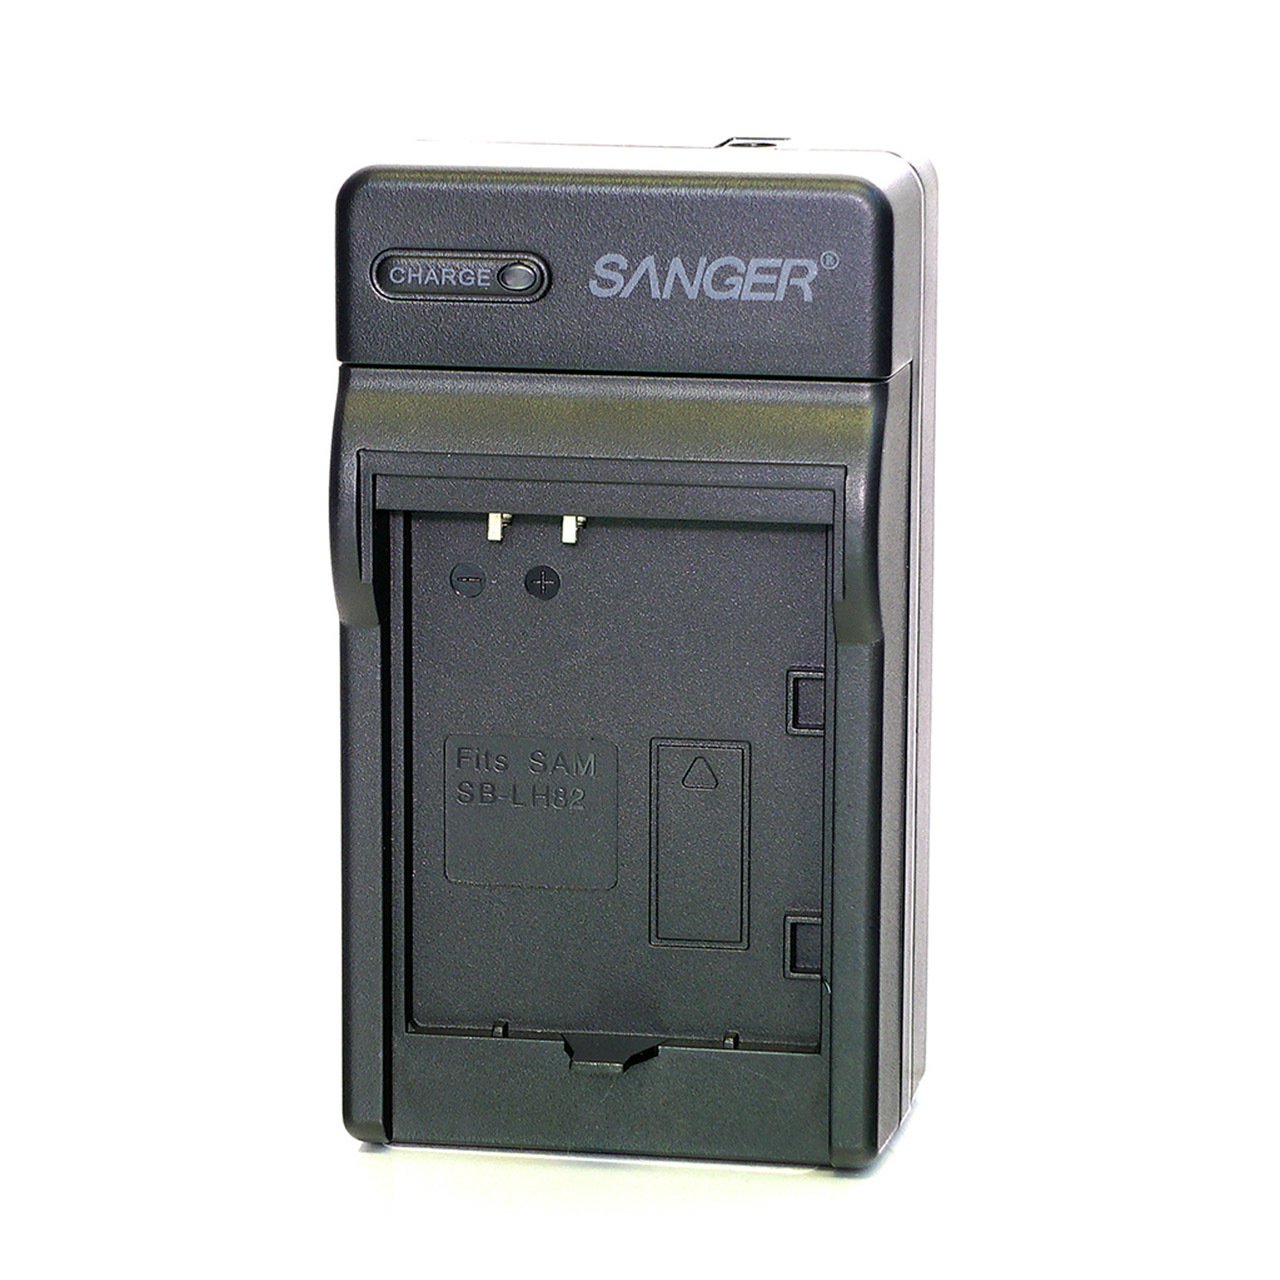 Sanger SB-LH82 Samsung Video Kamera Batarya Şarj Aleti